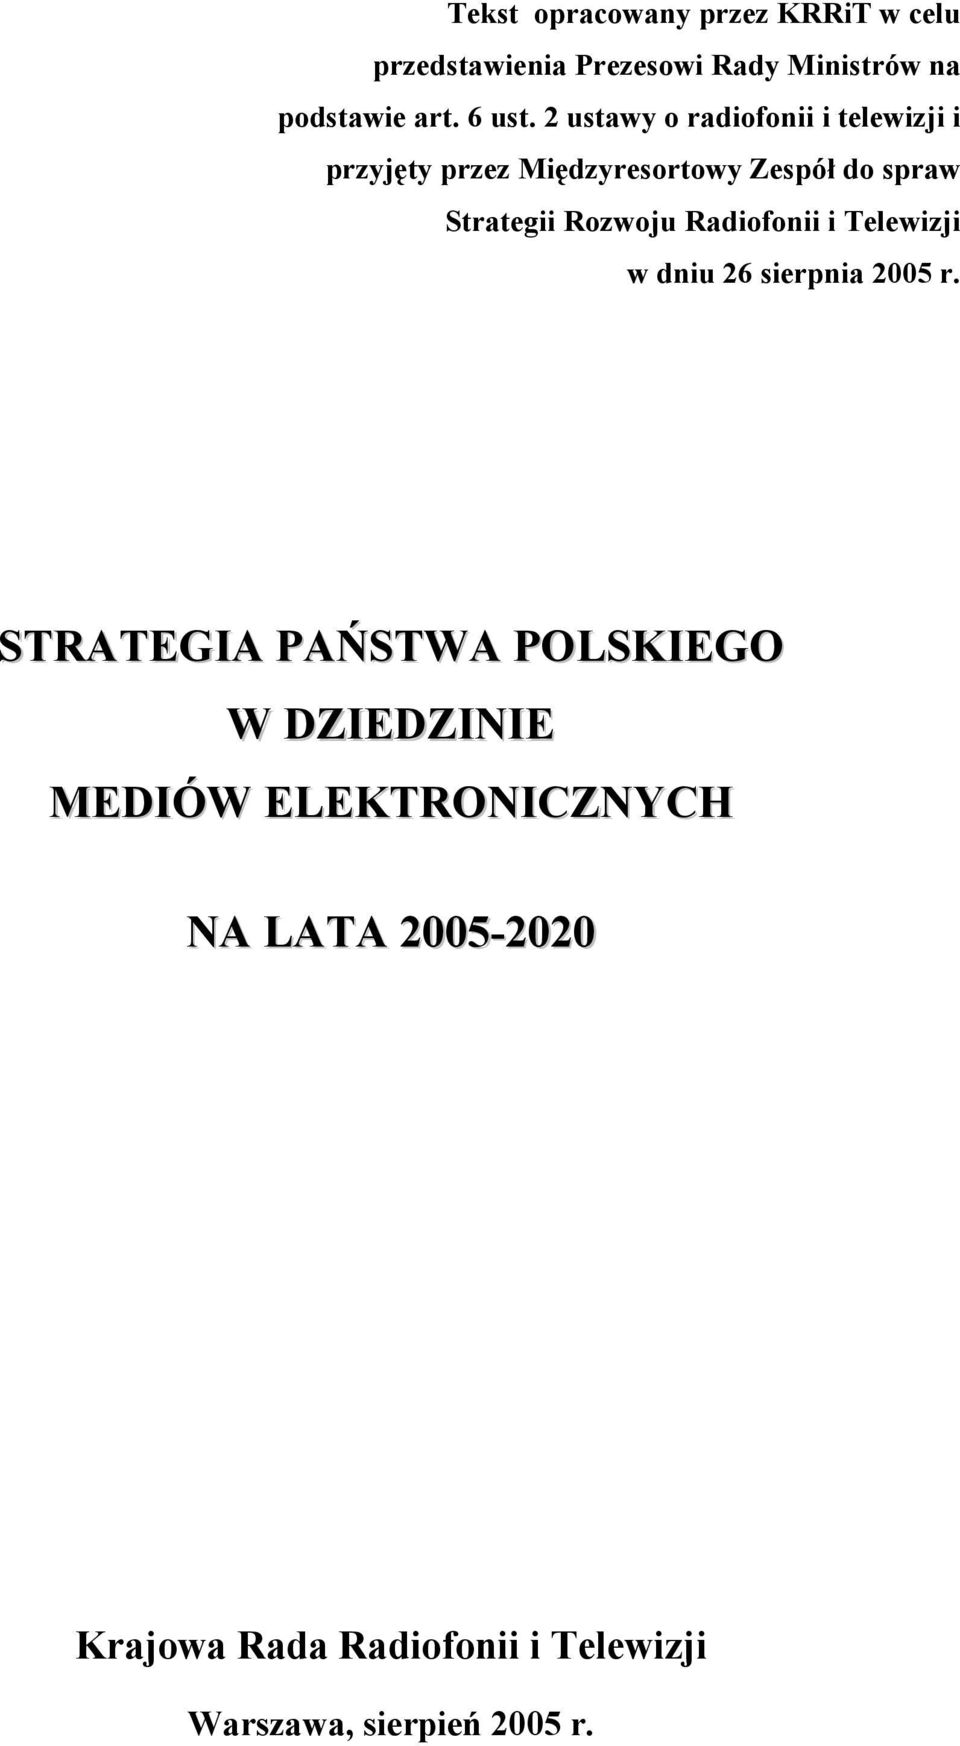 2 ustawy o radiofonii i telewizji i przyjęty przez Międzyresortowy Zespół do spraw Strategii